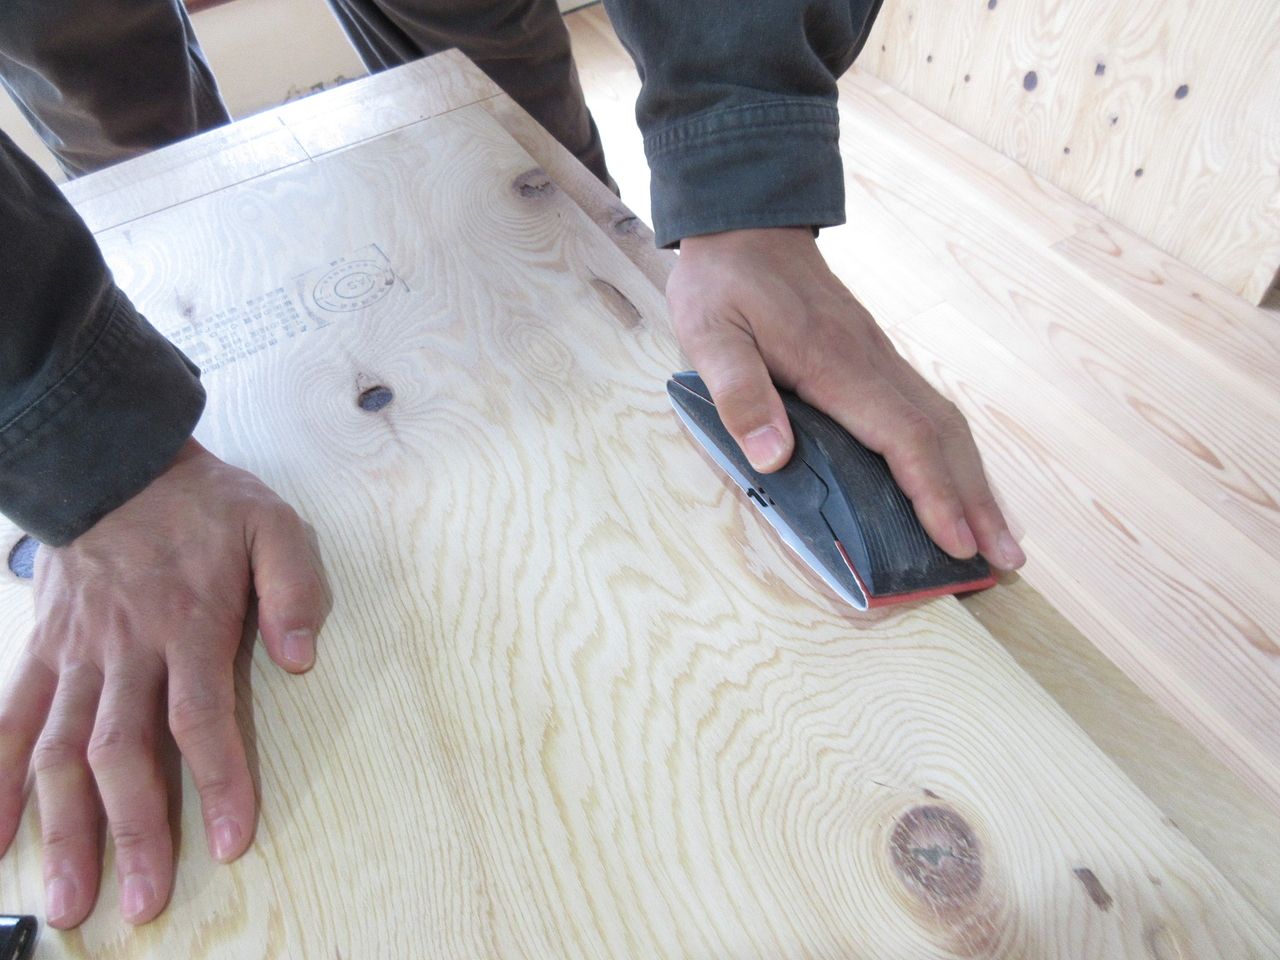 電動工具である丸ノコを使って合板をカットします。
そして、サンドペーパーを使って合板の角部分を磨いて削り落します。